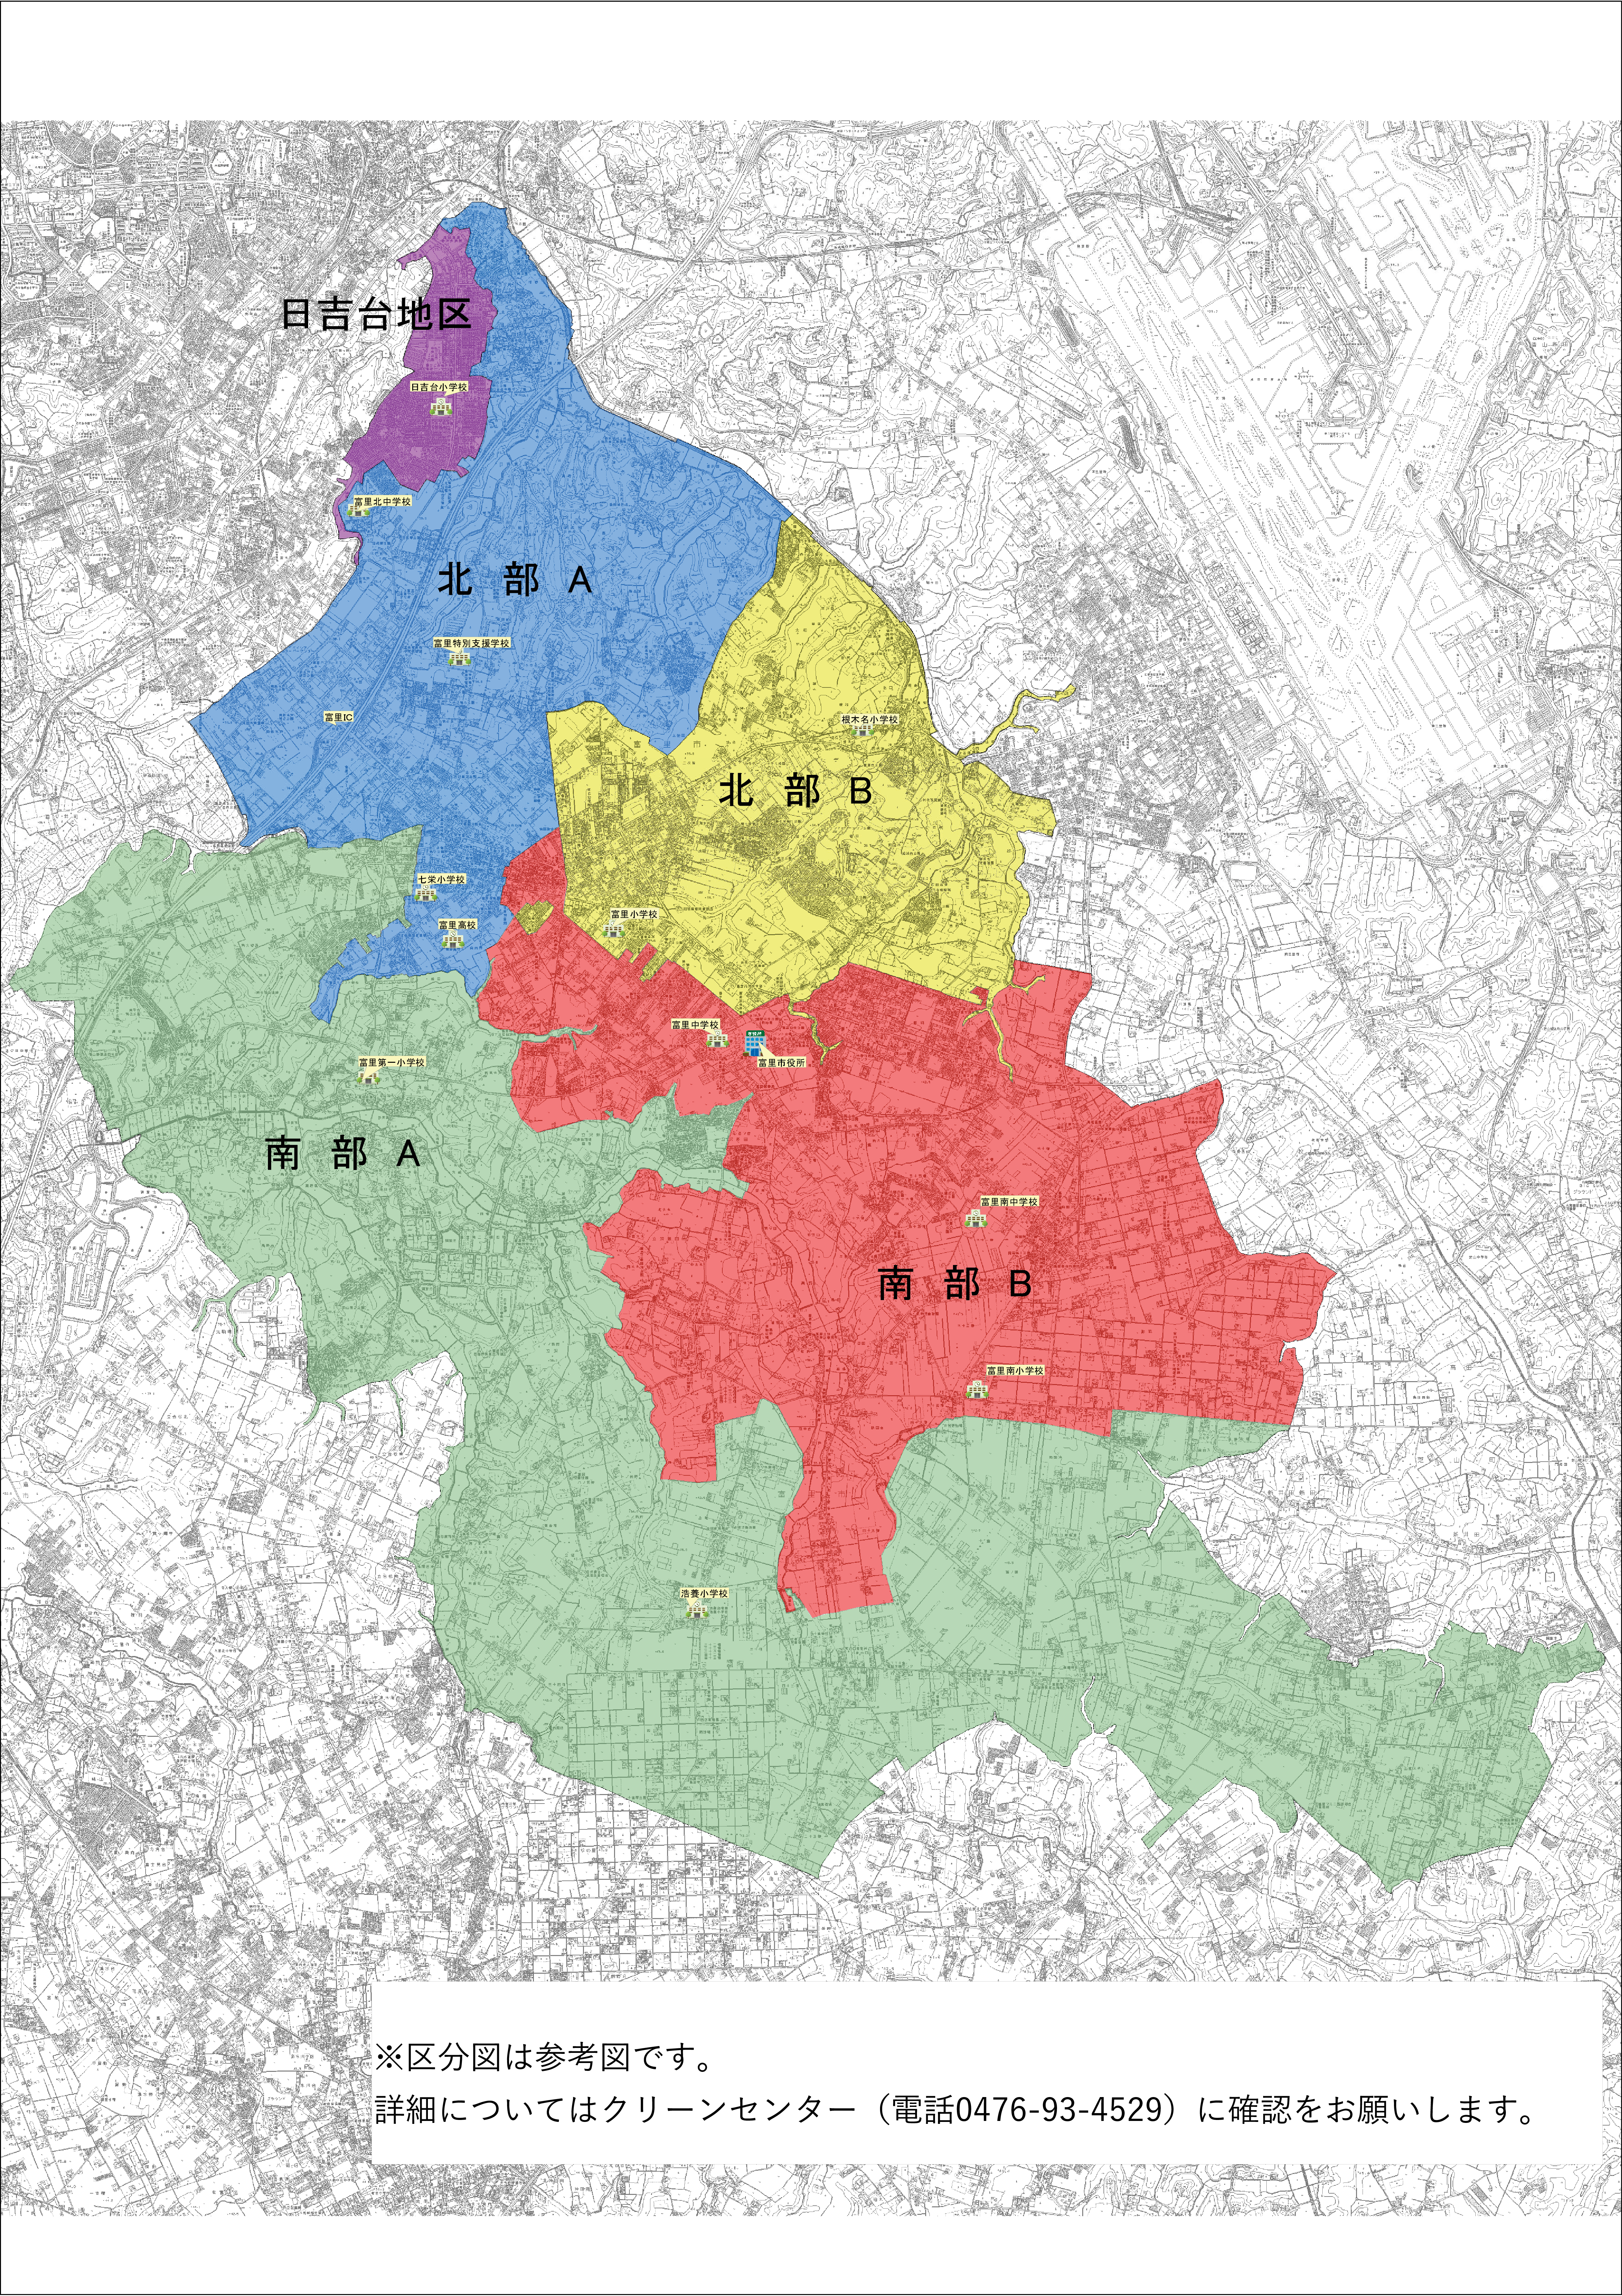 ごみ収集区分を色分けした富里市全体図